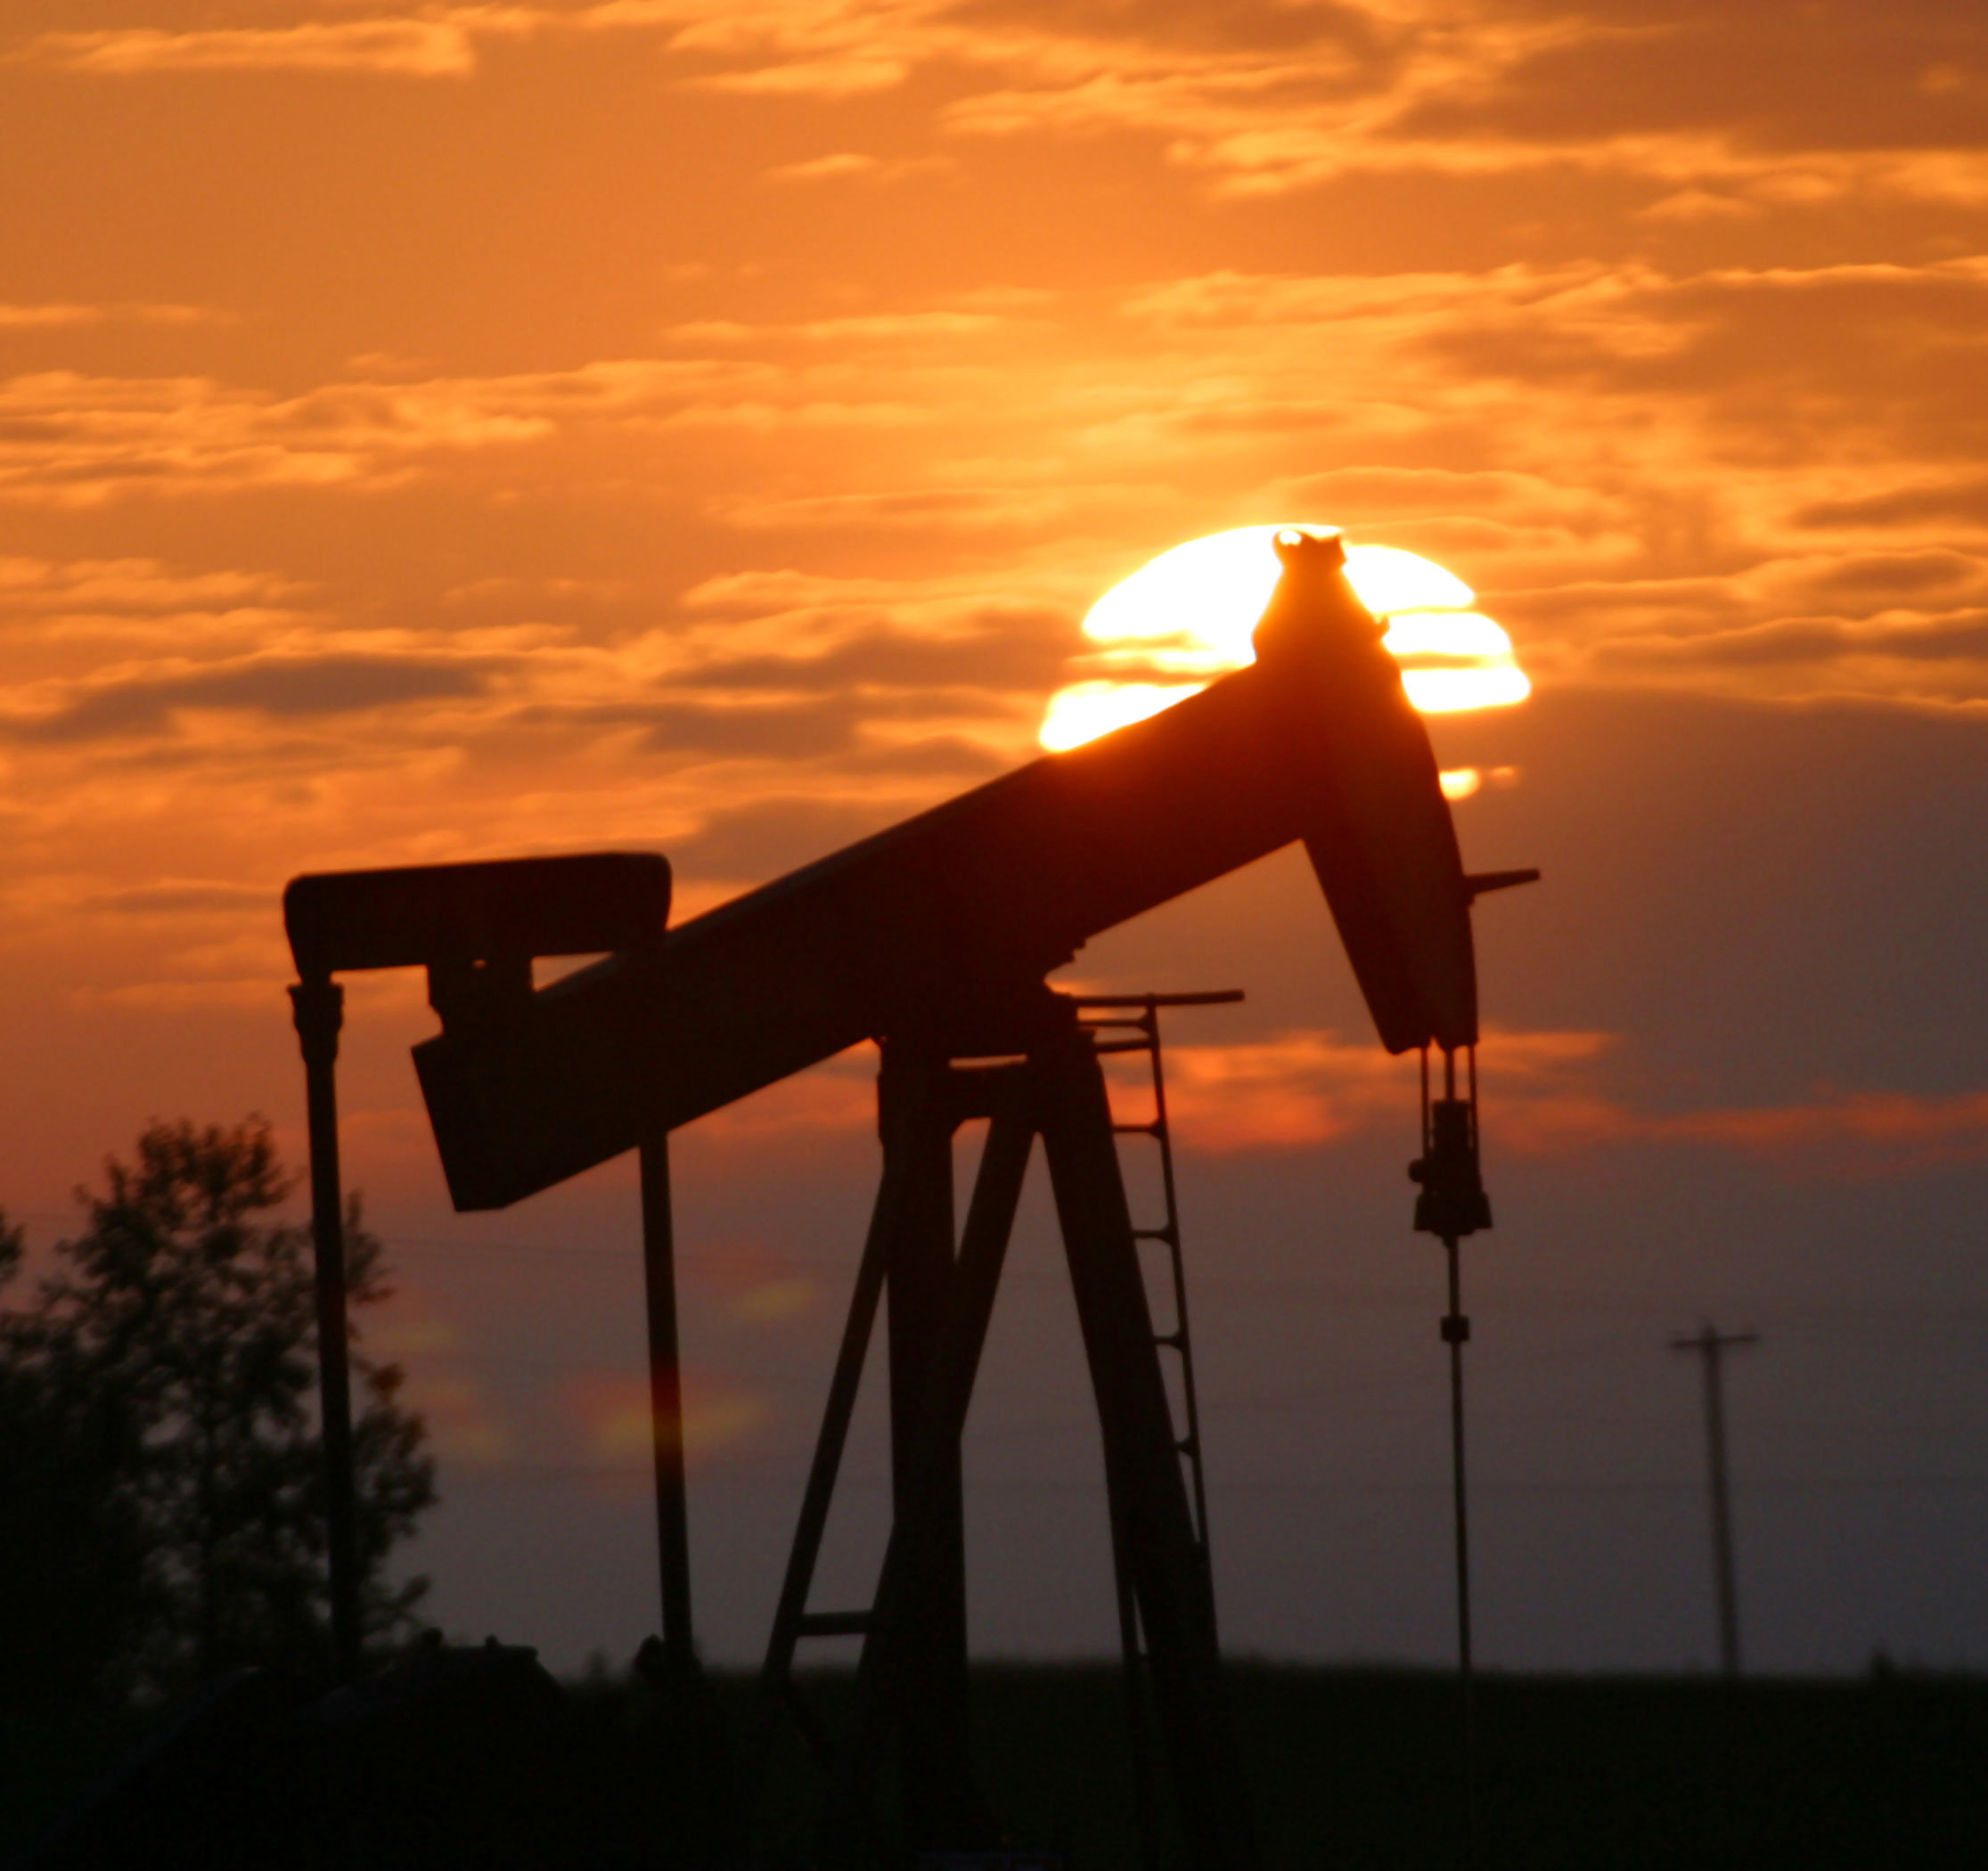 کاهش کم سابقه سکوهای نفتی آمریکا از 2011